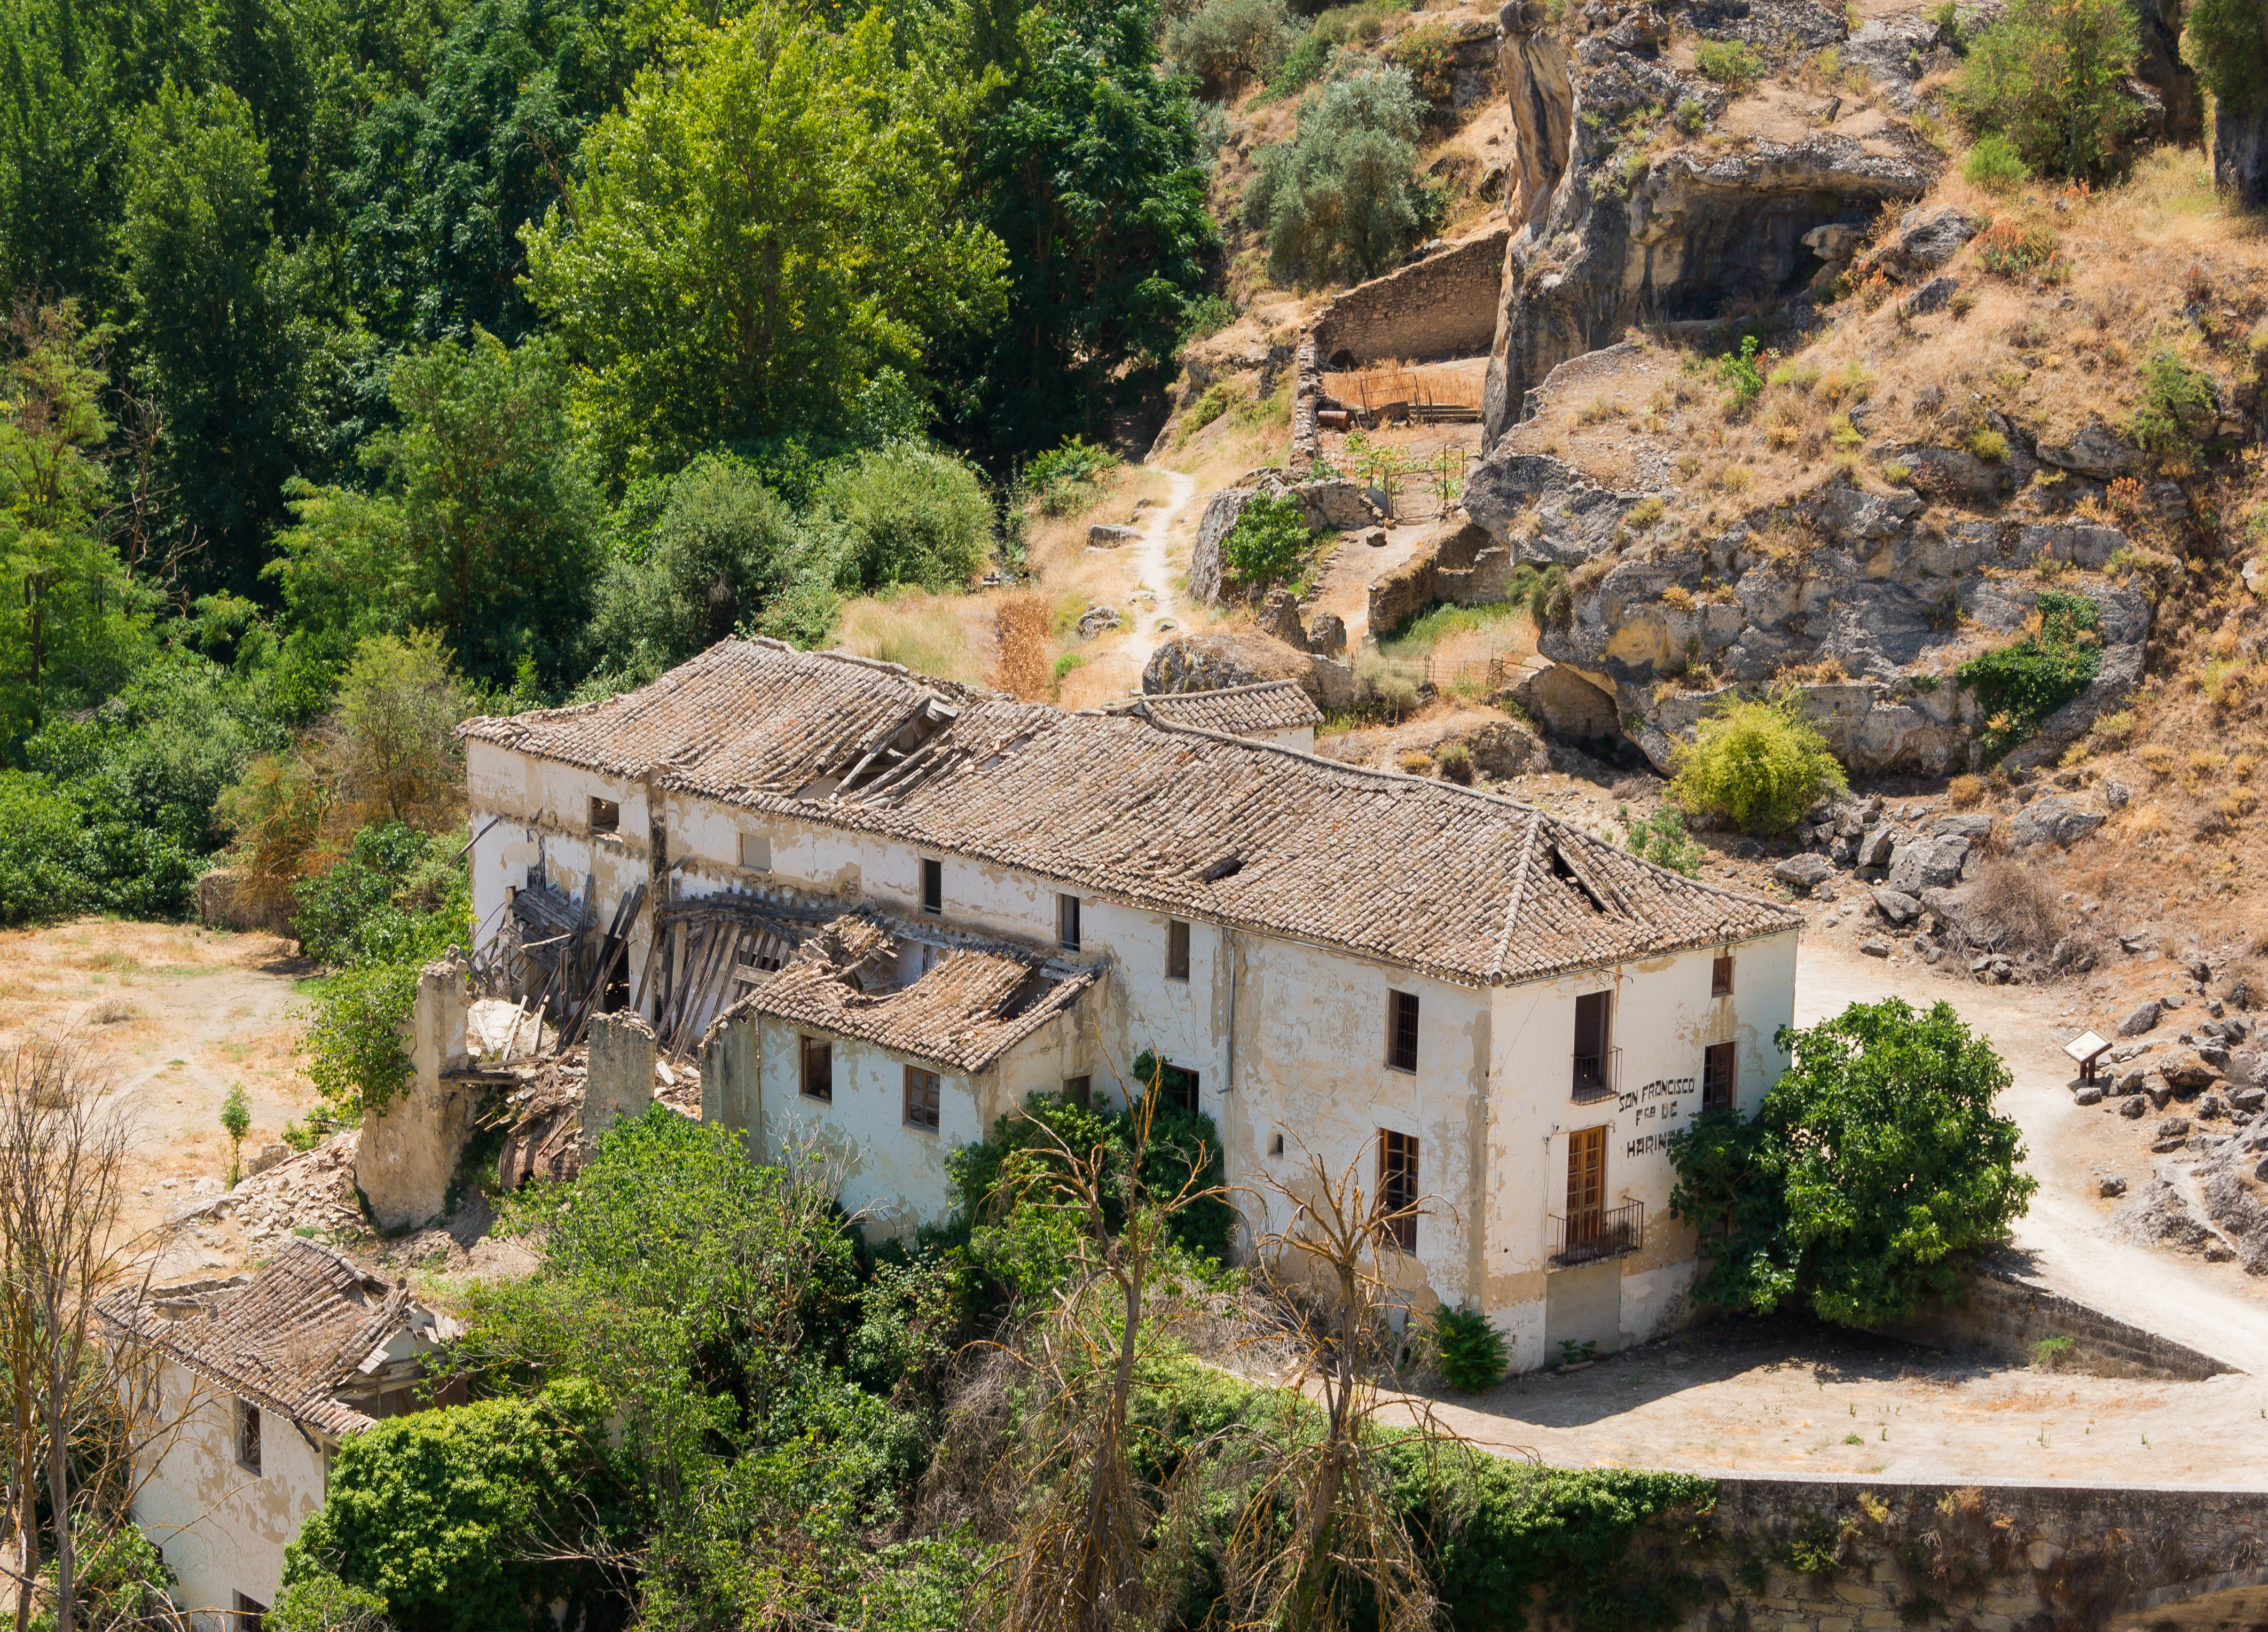 Ruin Fabrica de Harinas, Alhama de Granada, Andalusia, Spain